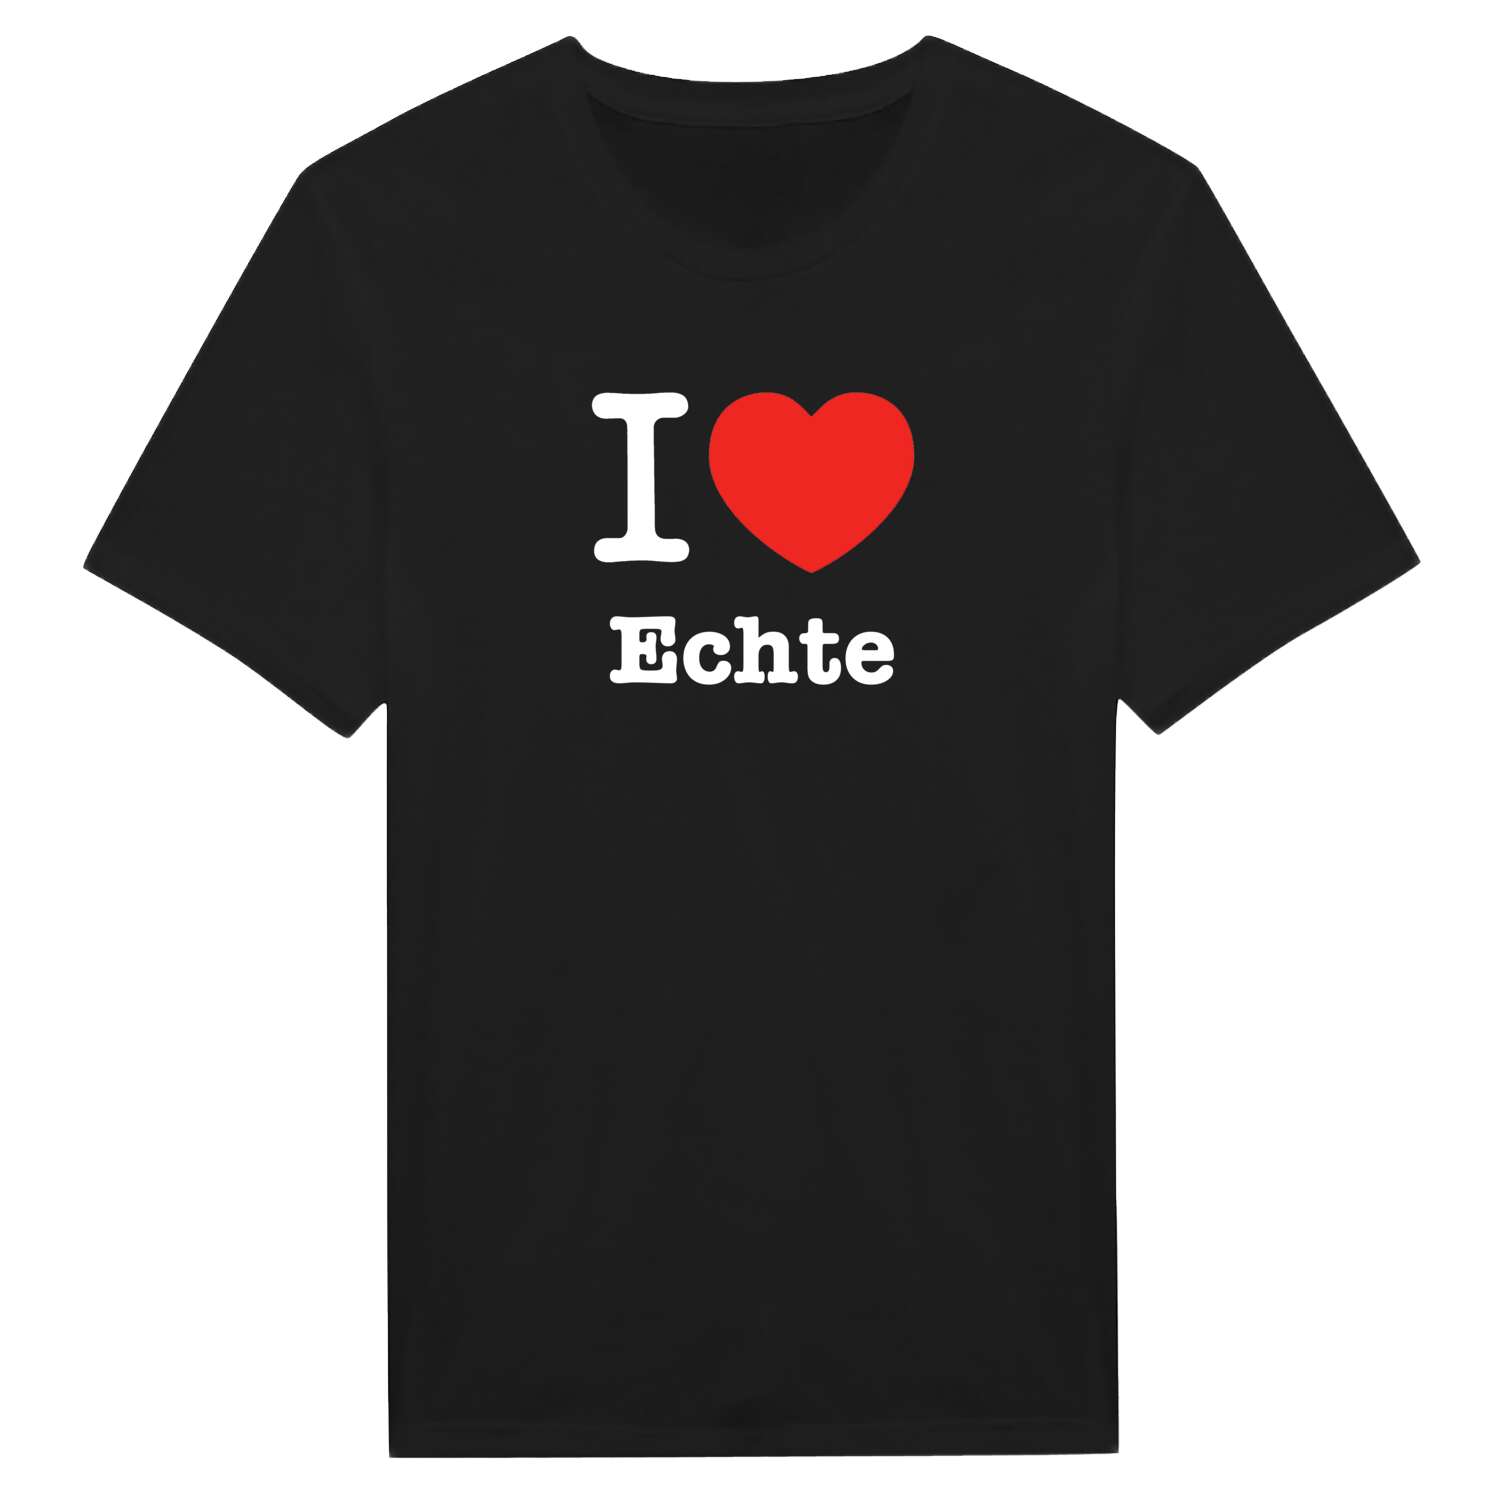 Echte T-Shirt »I love«